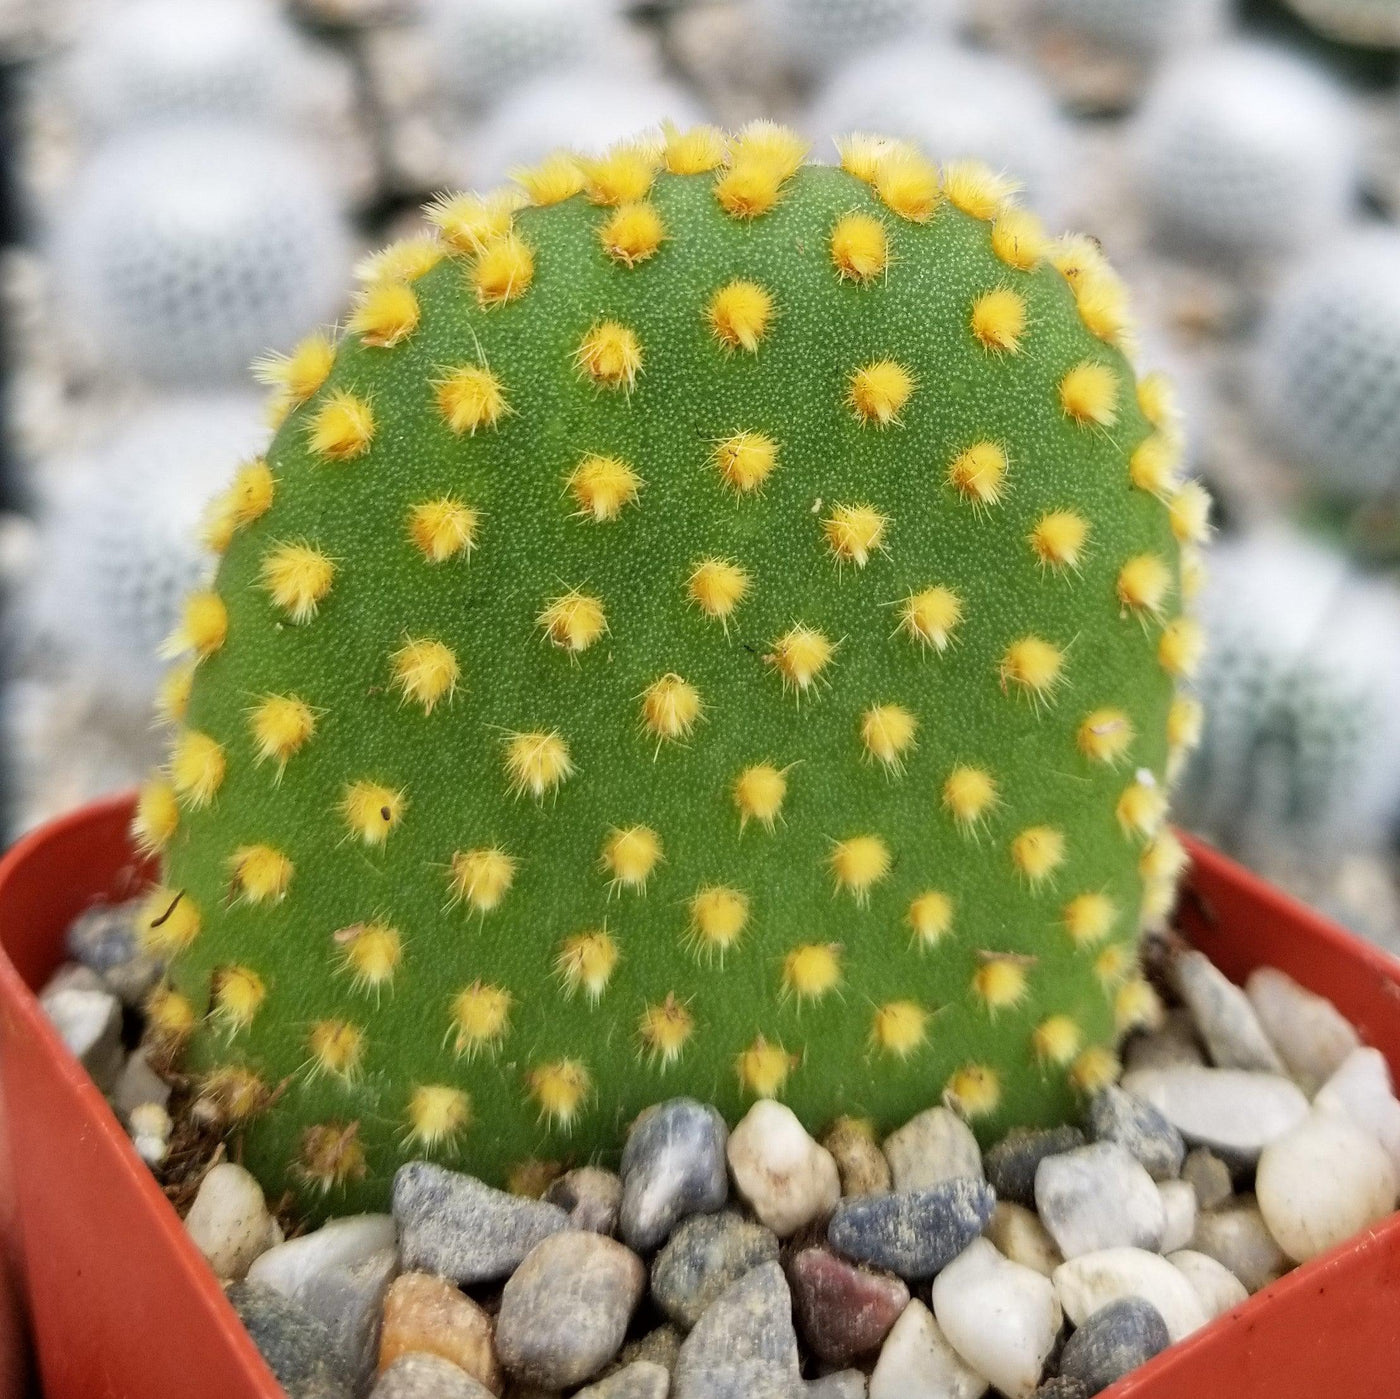 Bunny Ear Cactus 'Opuntia microdasys'